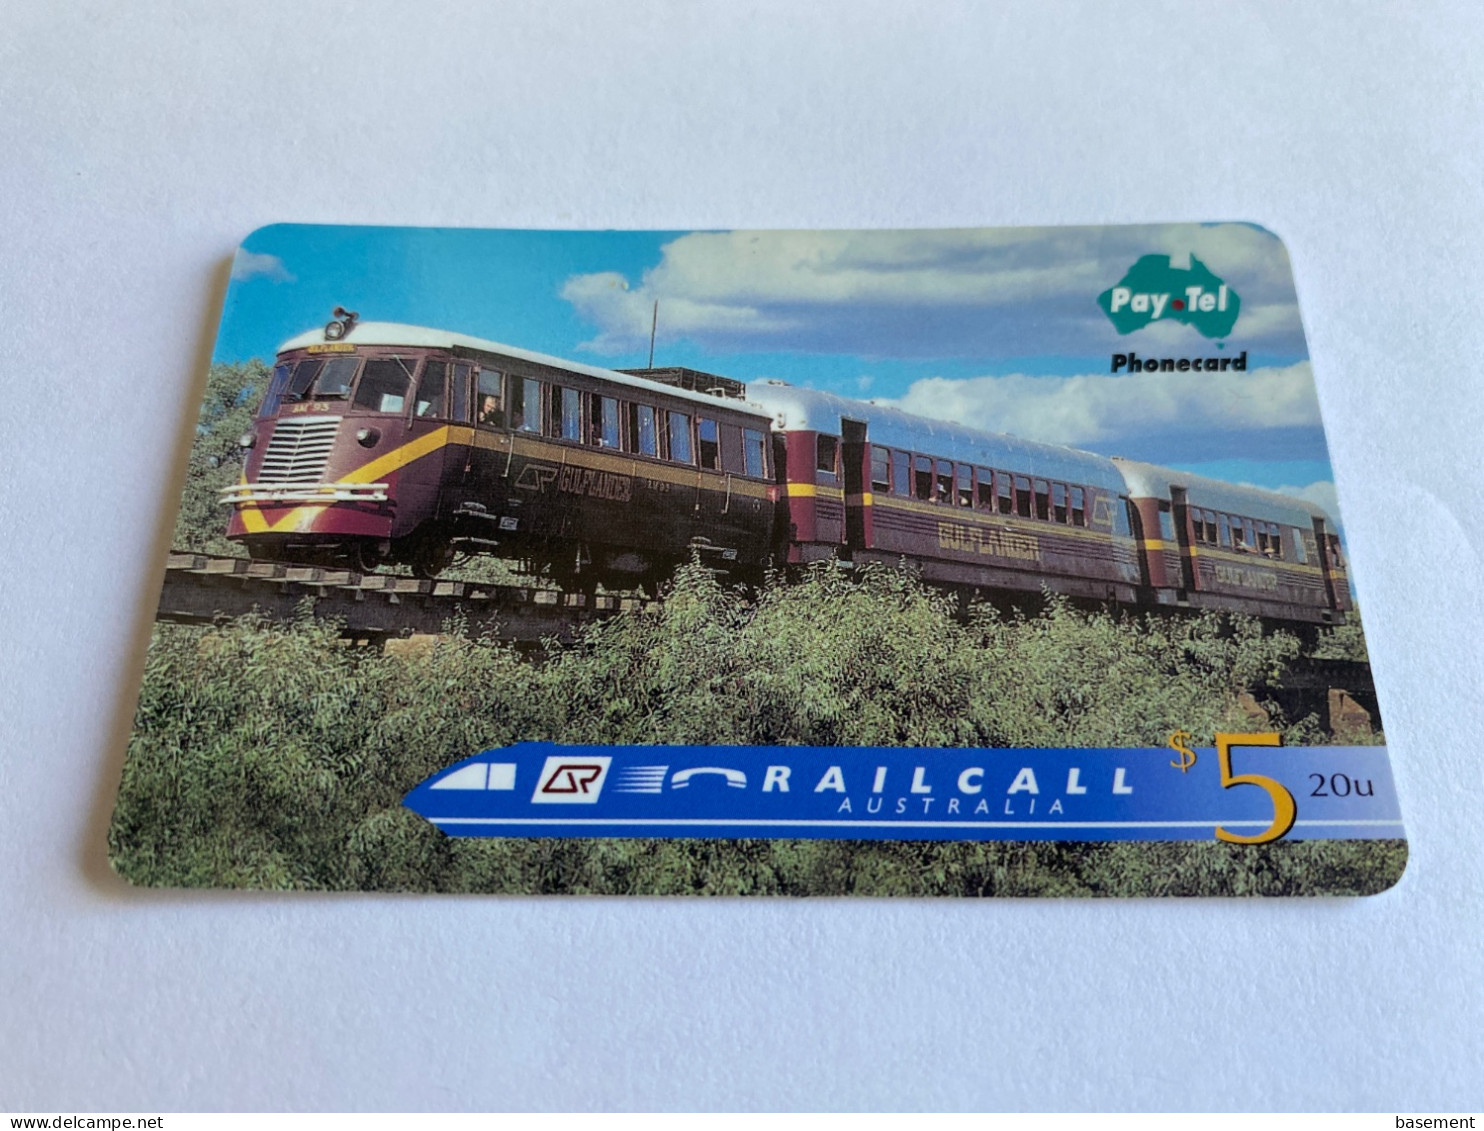 1:030 - Australia Pay Tel RailCall Train - Australia